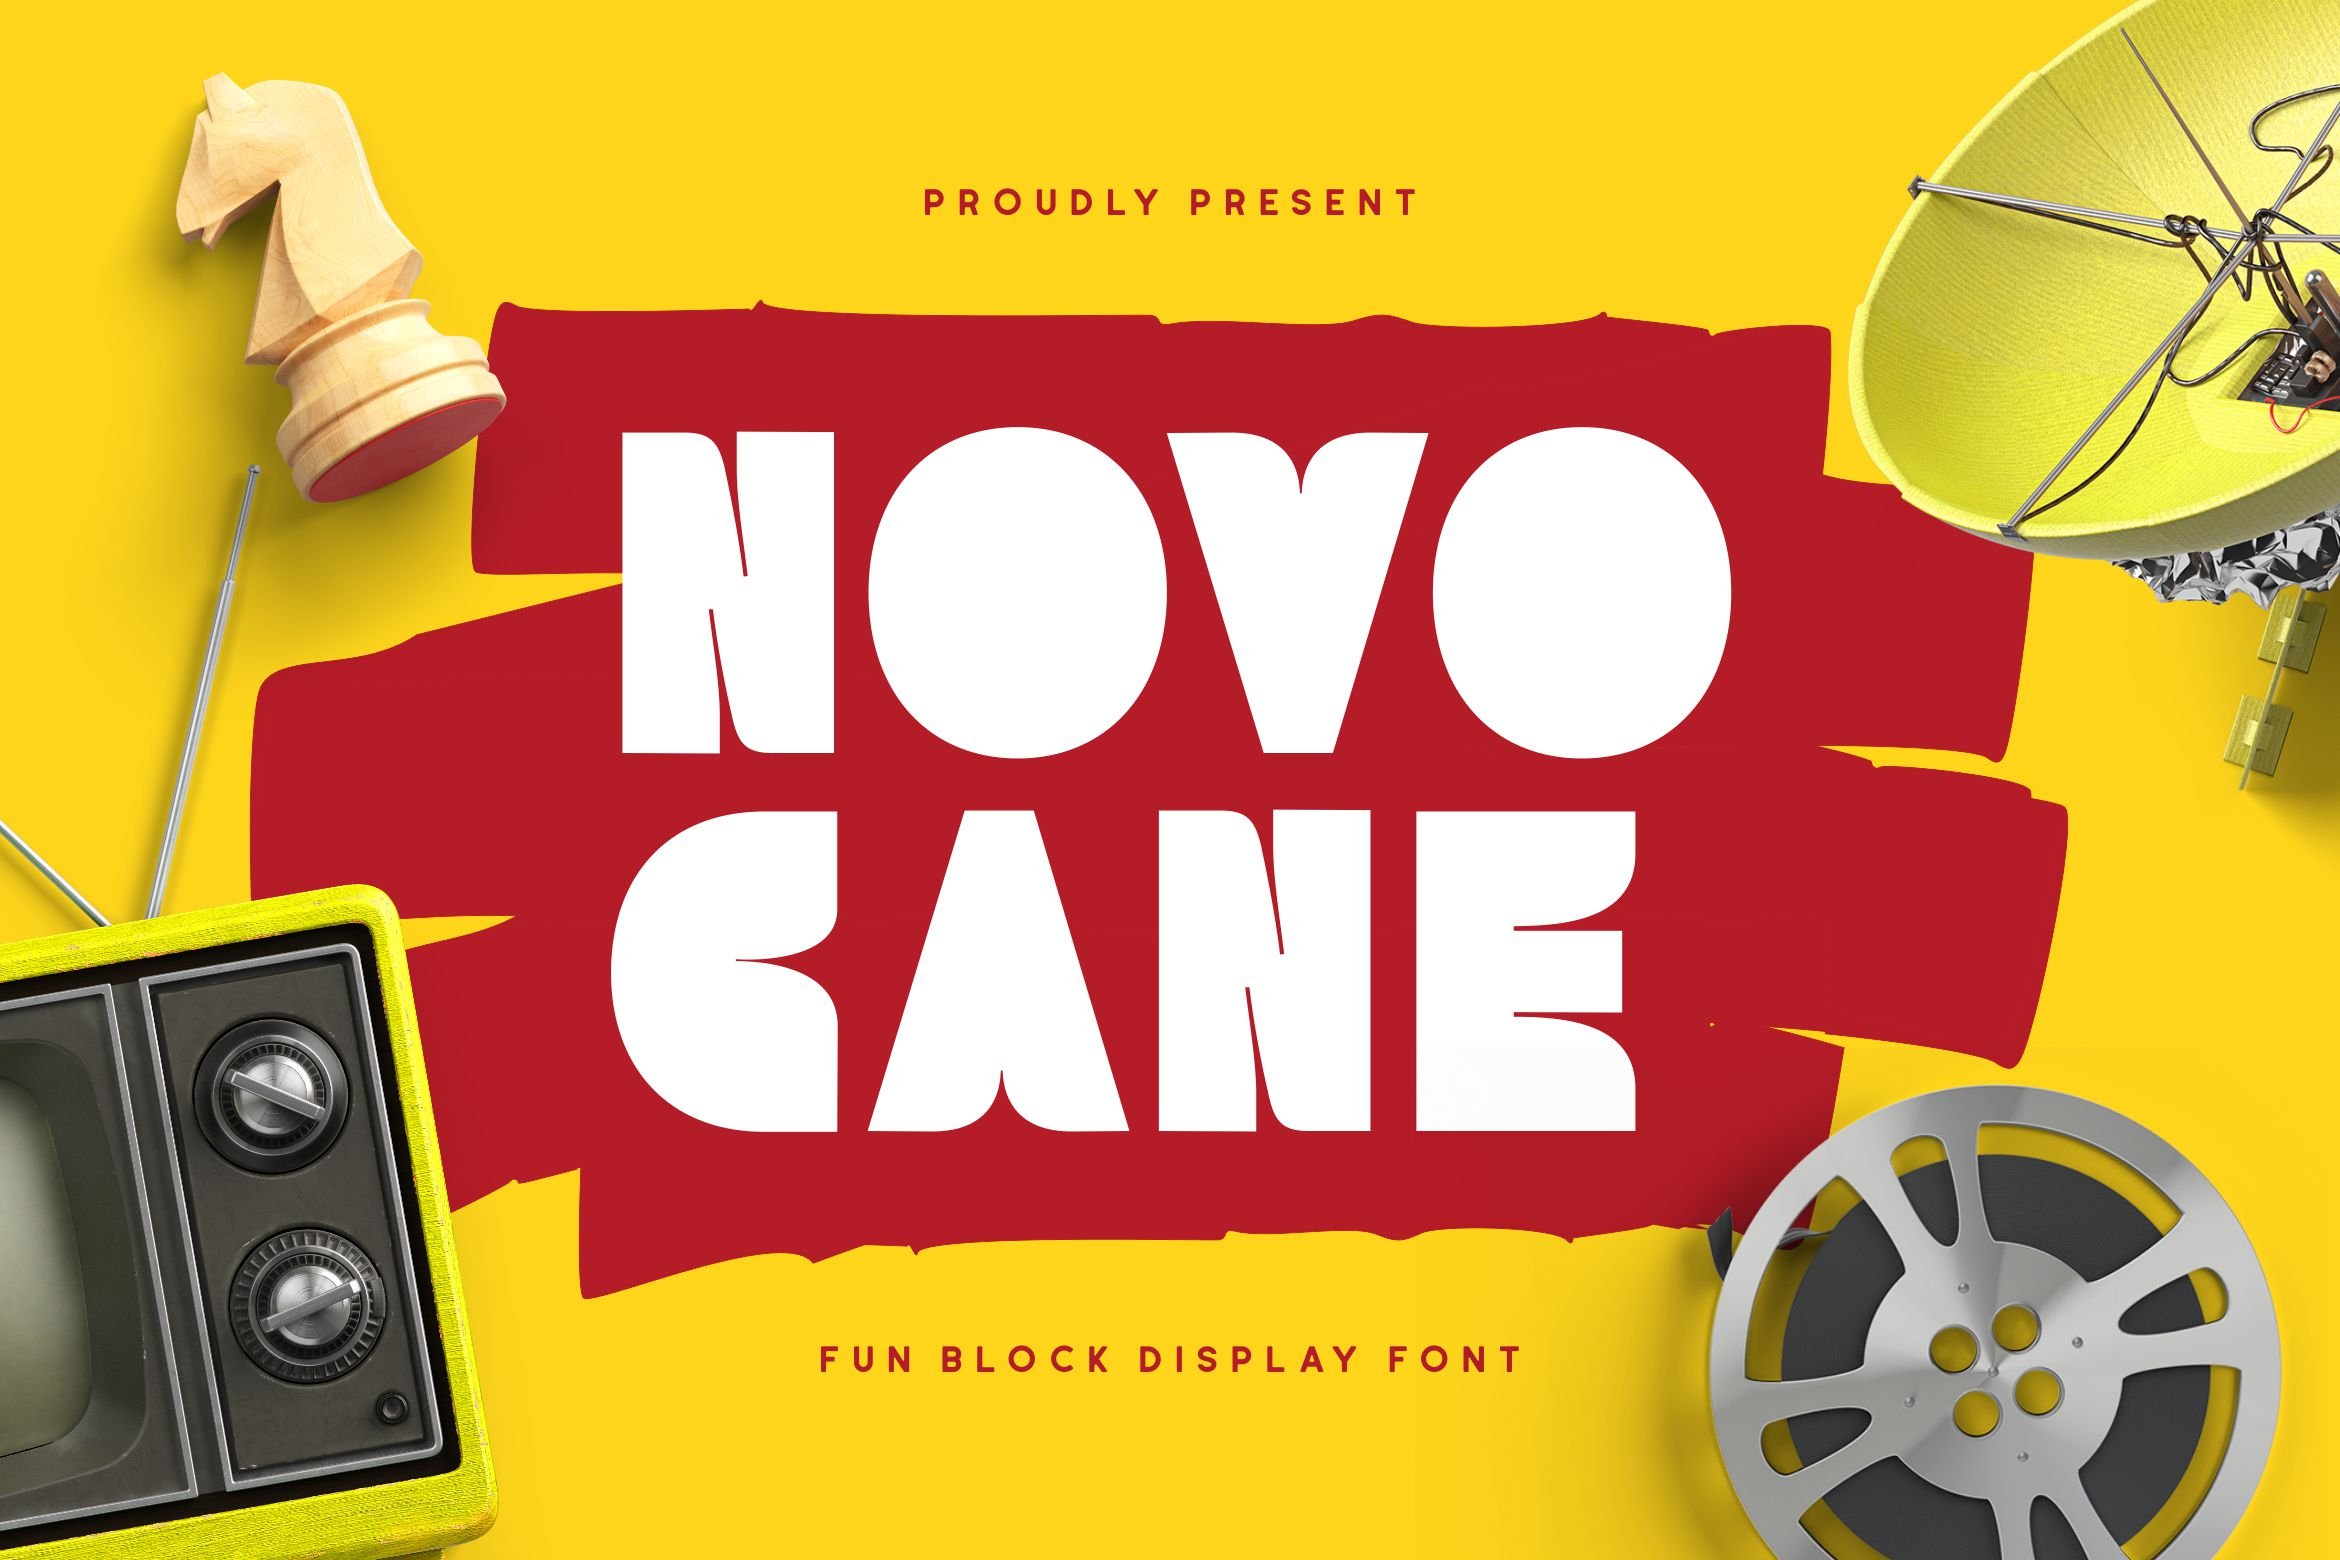 Novocane Font cover image.